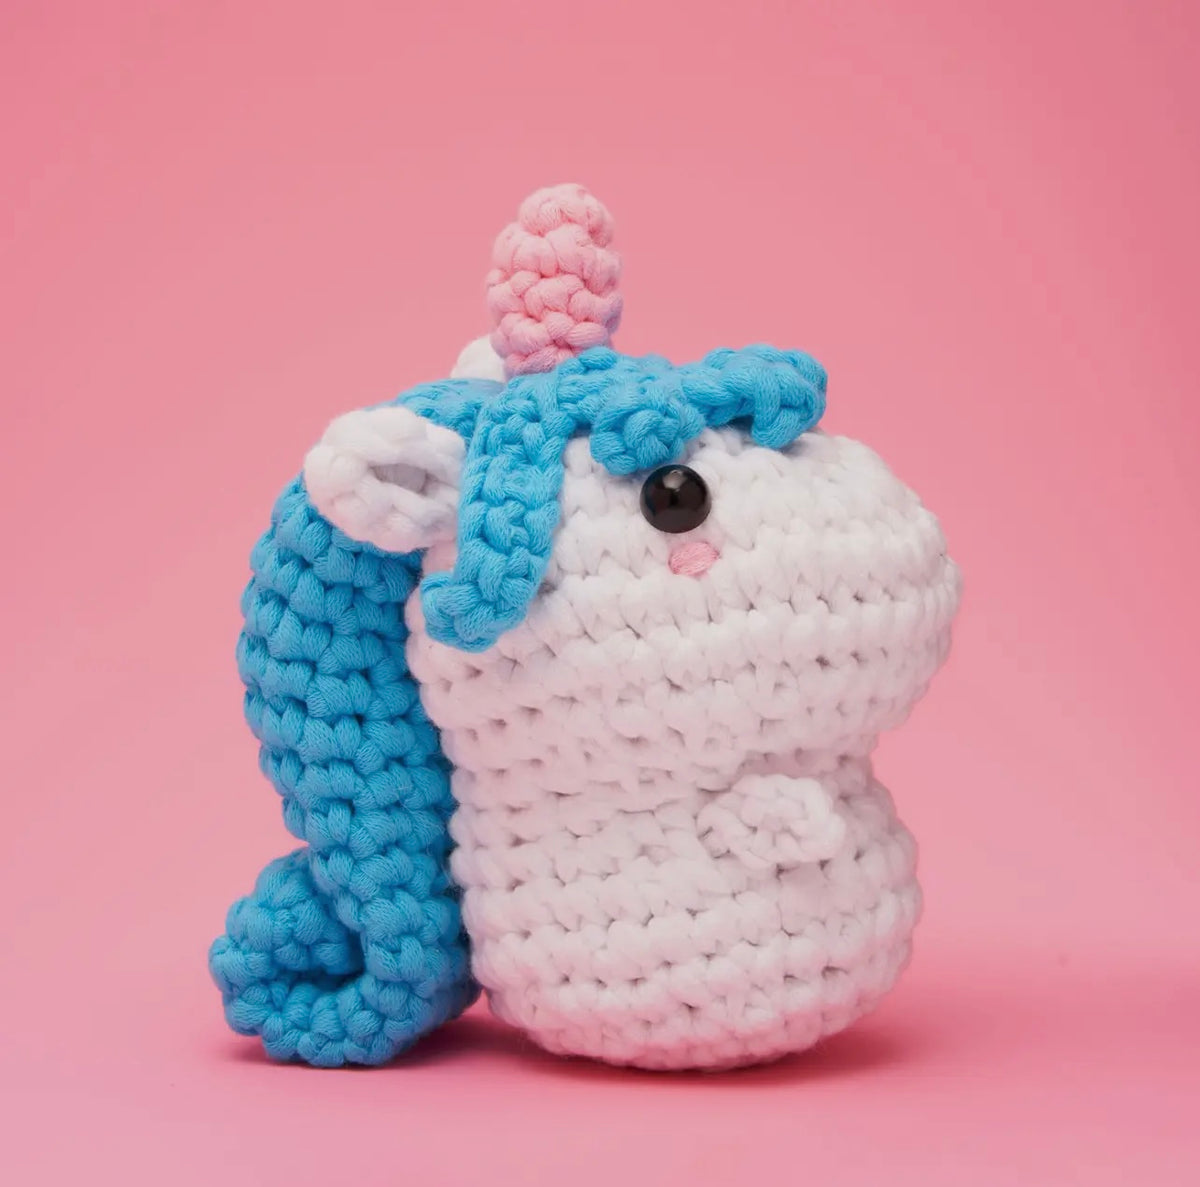 The Woobles | Billy the Unicorn - Beginner Crochet Kit